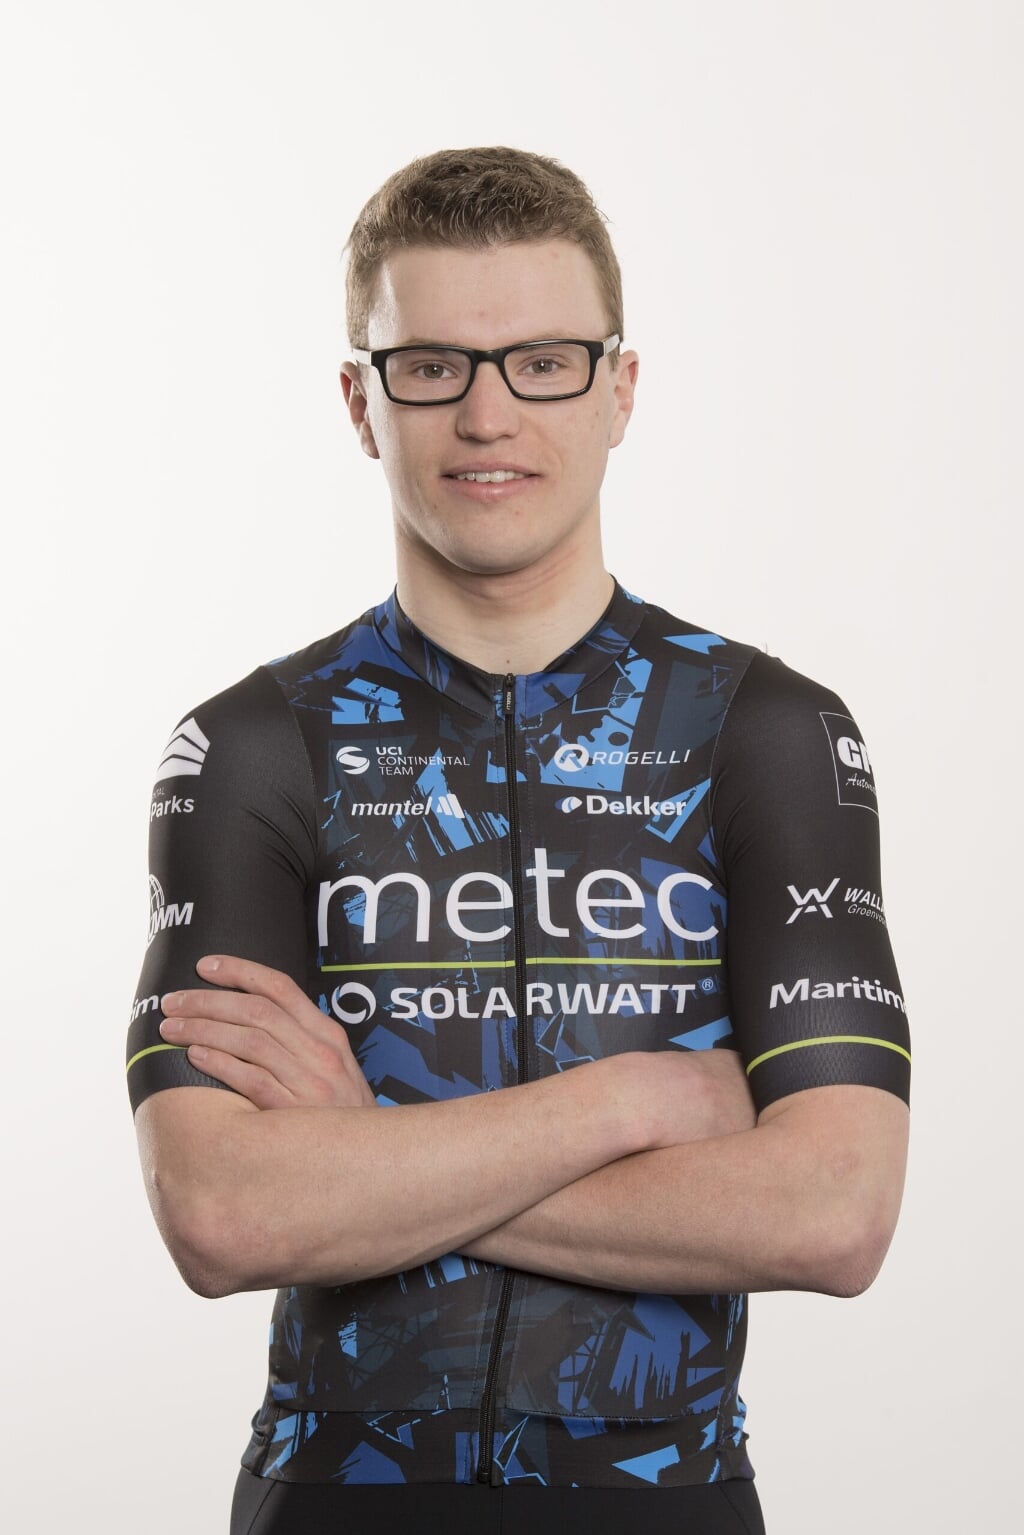 Hoogendoorn besloot Olympia’s Tour als 26e en 11e in het jongerenklassement. In het puntenklassement werd hij 16e.